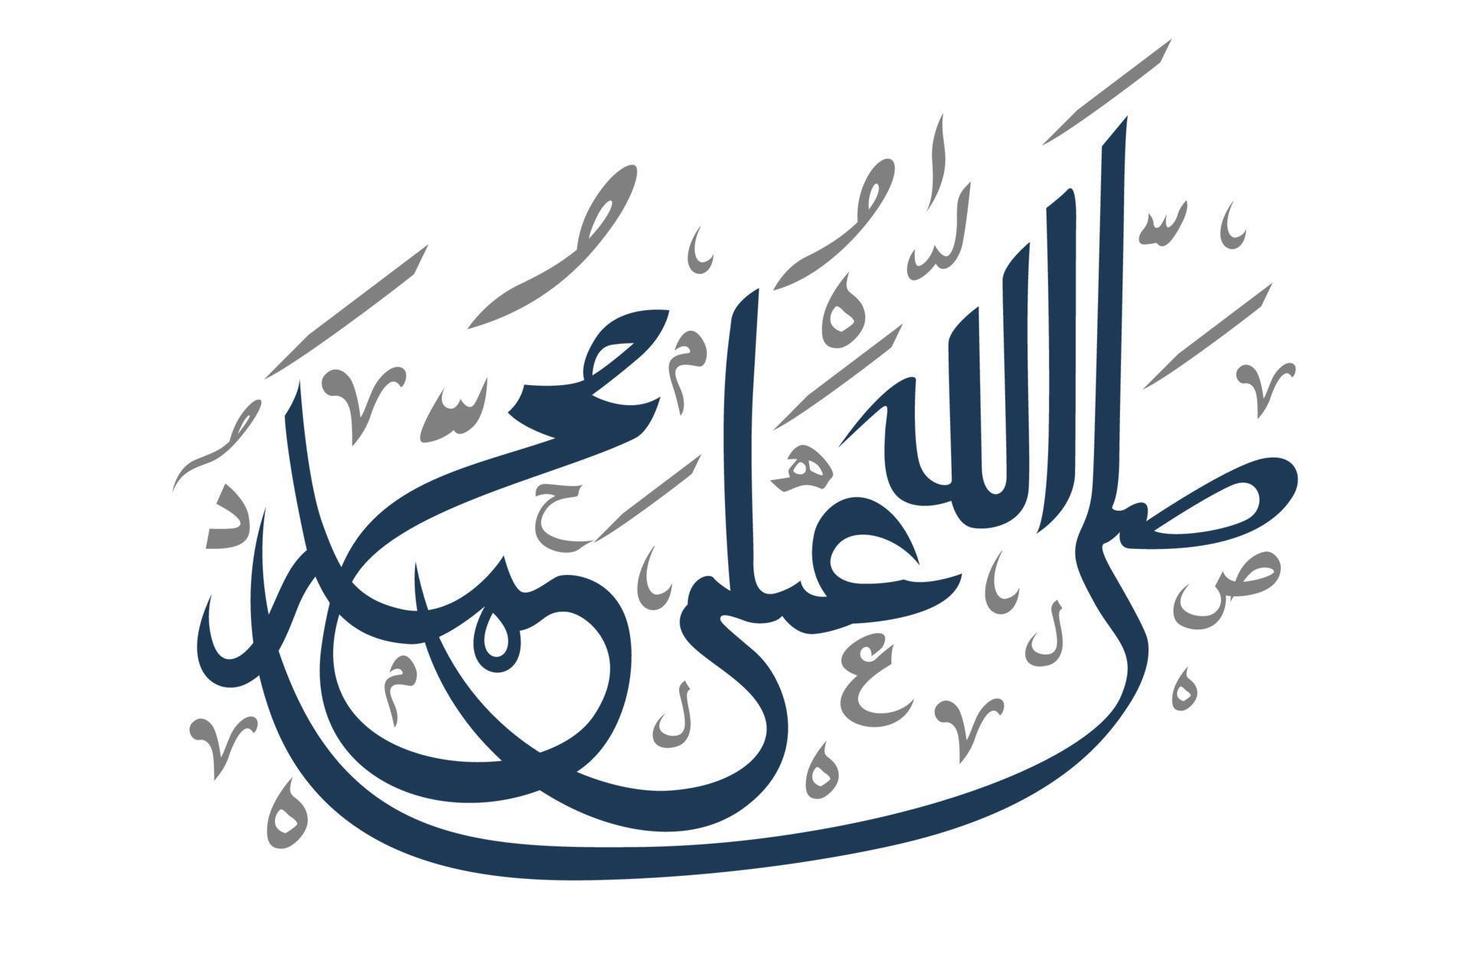 skallallahu ala muhammed arabisk kalligrafi. översatt gud välsigne Muhammed vektor